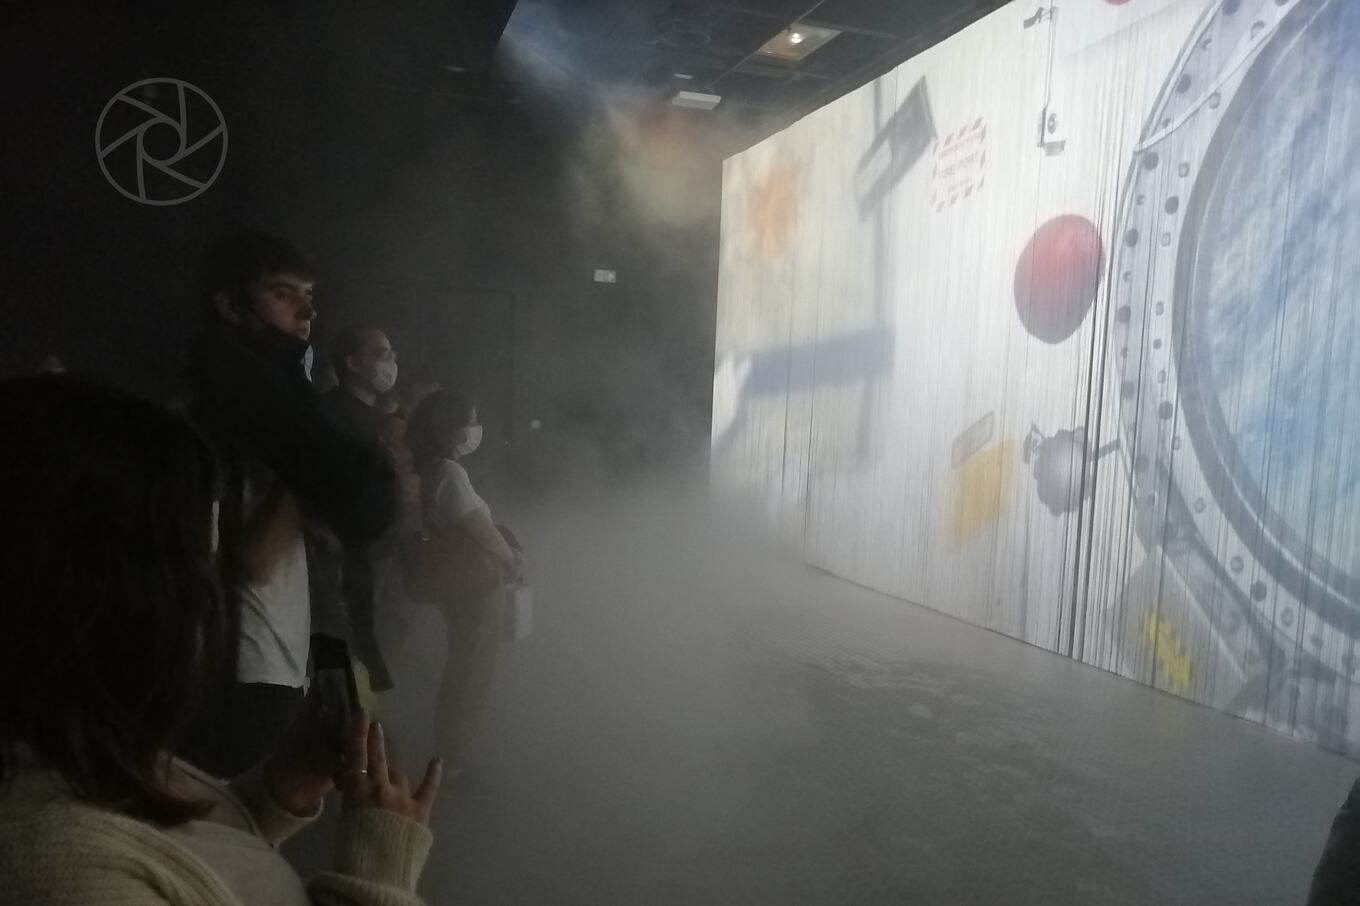 La historia ancestral y contemporánea del Japón es expuesta en salas cubiertas de niebla, lo que da una sensación de misterio y expectativa al recorrido por el pabellón. Foto: Juan Carlos Dos Santos.